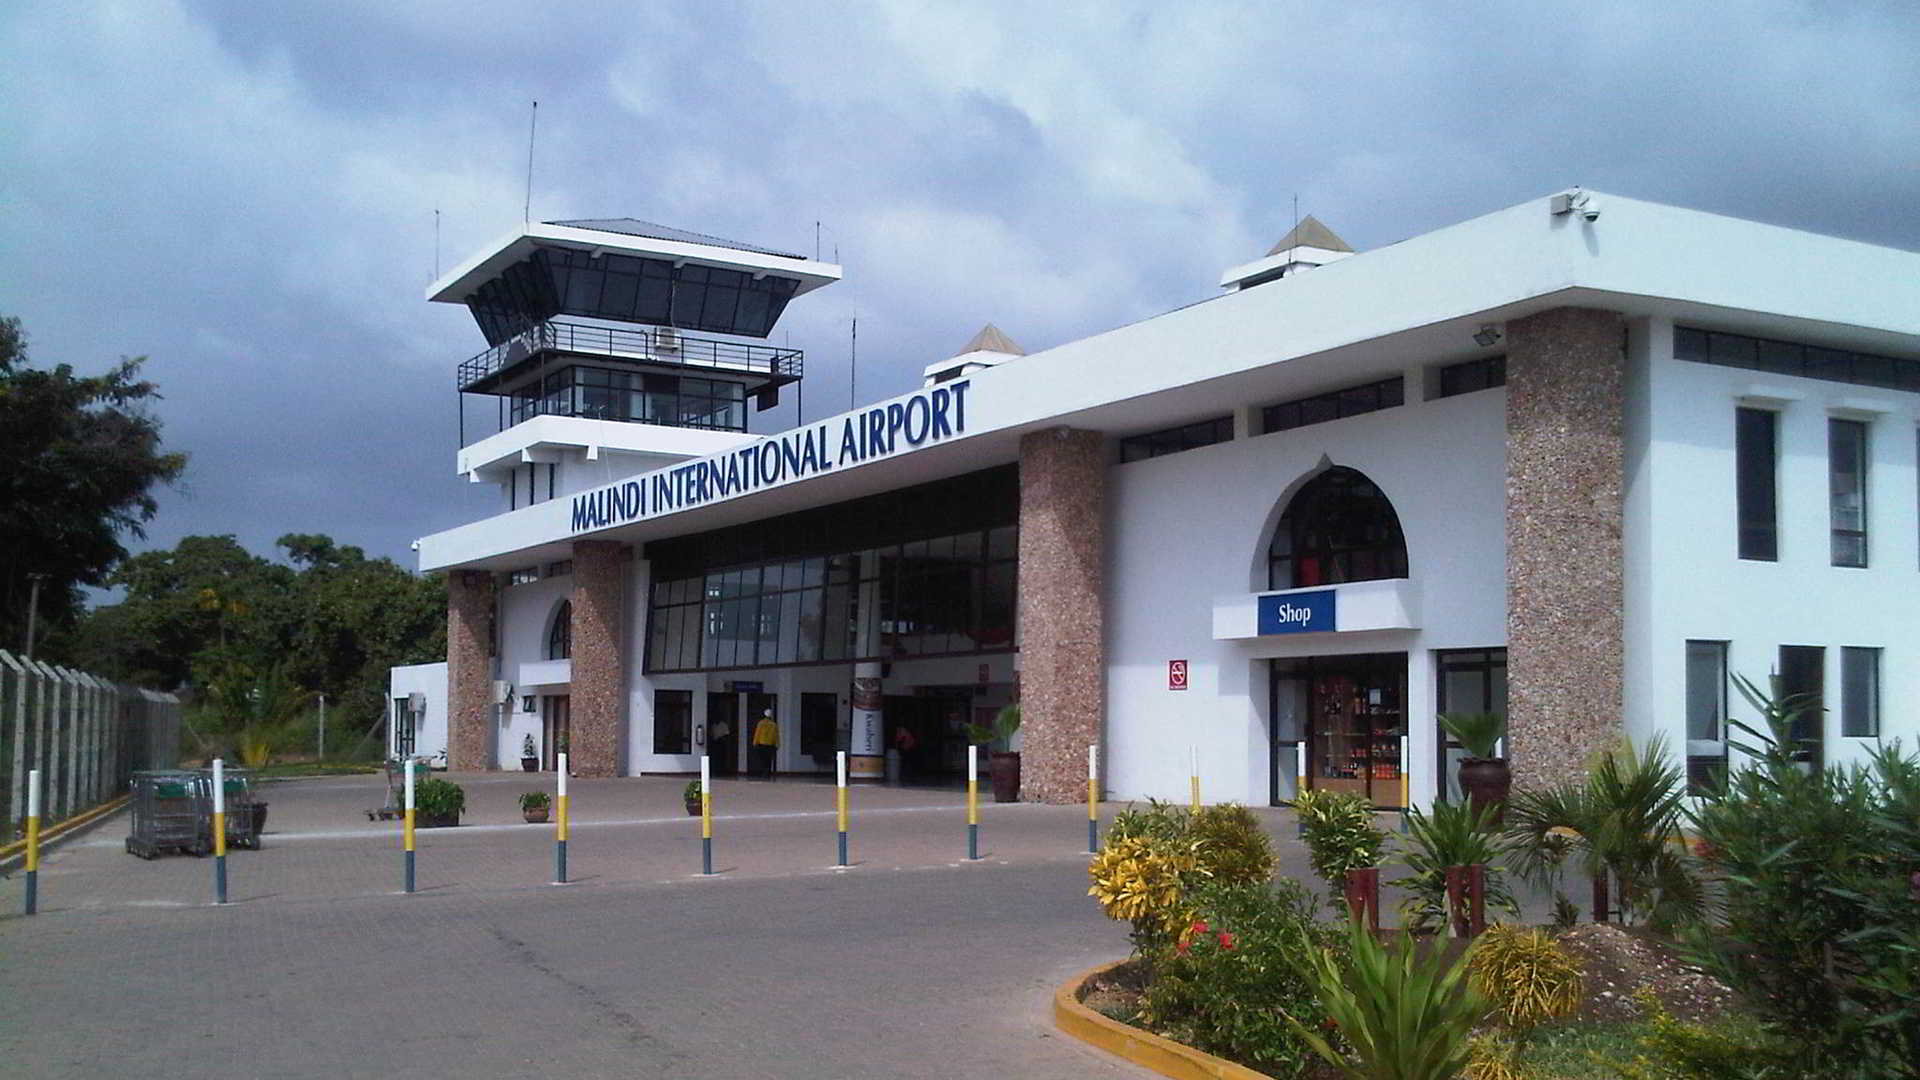 Malindi Airport